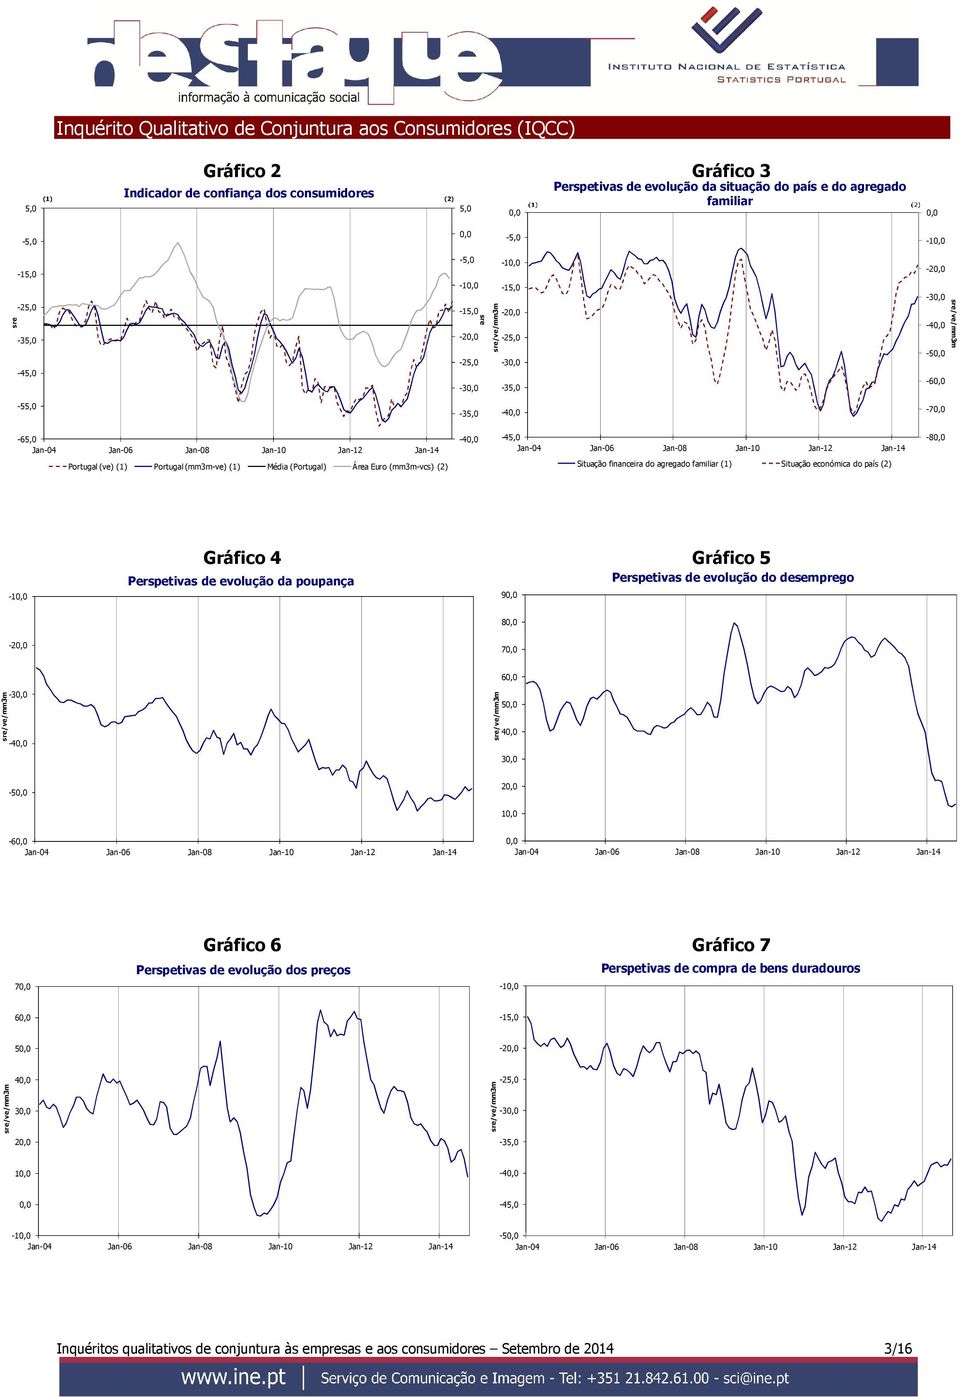 Área Euro (mm3m-vcs) (2) Situação financeira do agregado familiar (1) Situação económica do país (2) -1 Gráfico 4 Gráfico 5 Perspetivas de evolução da poupança Perspetivas de evolução do desemprego 9